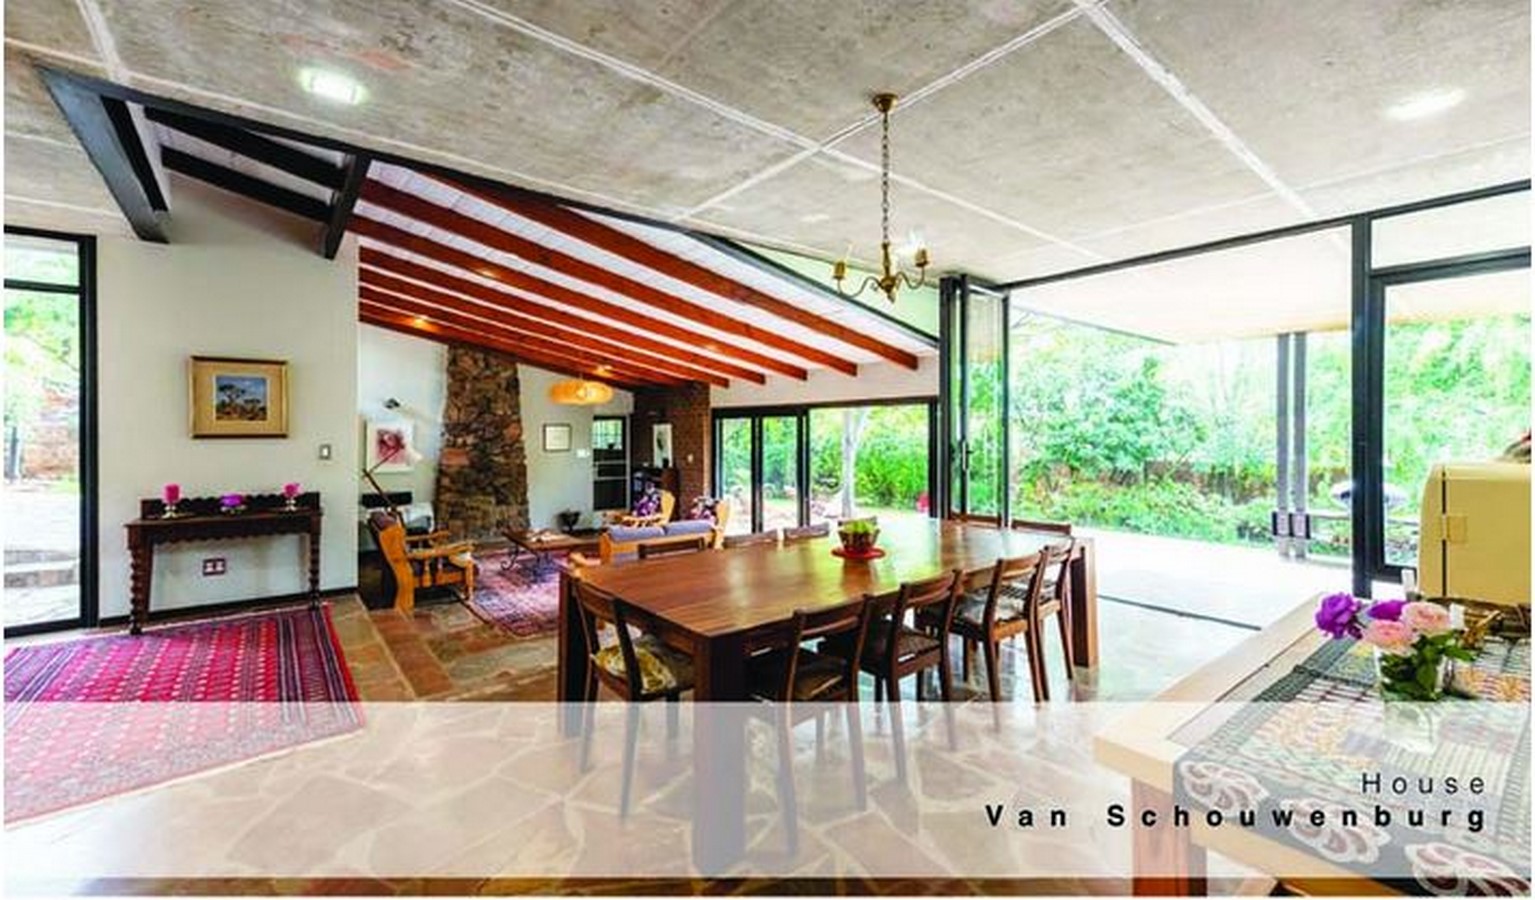 House Van Schouwenburg by Deter Architecture & Design (Pty) LTD - Sheet2